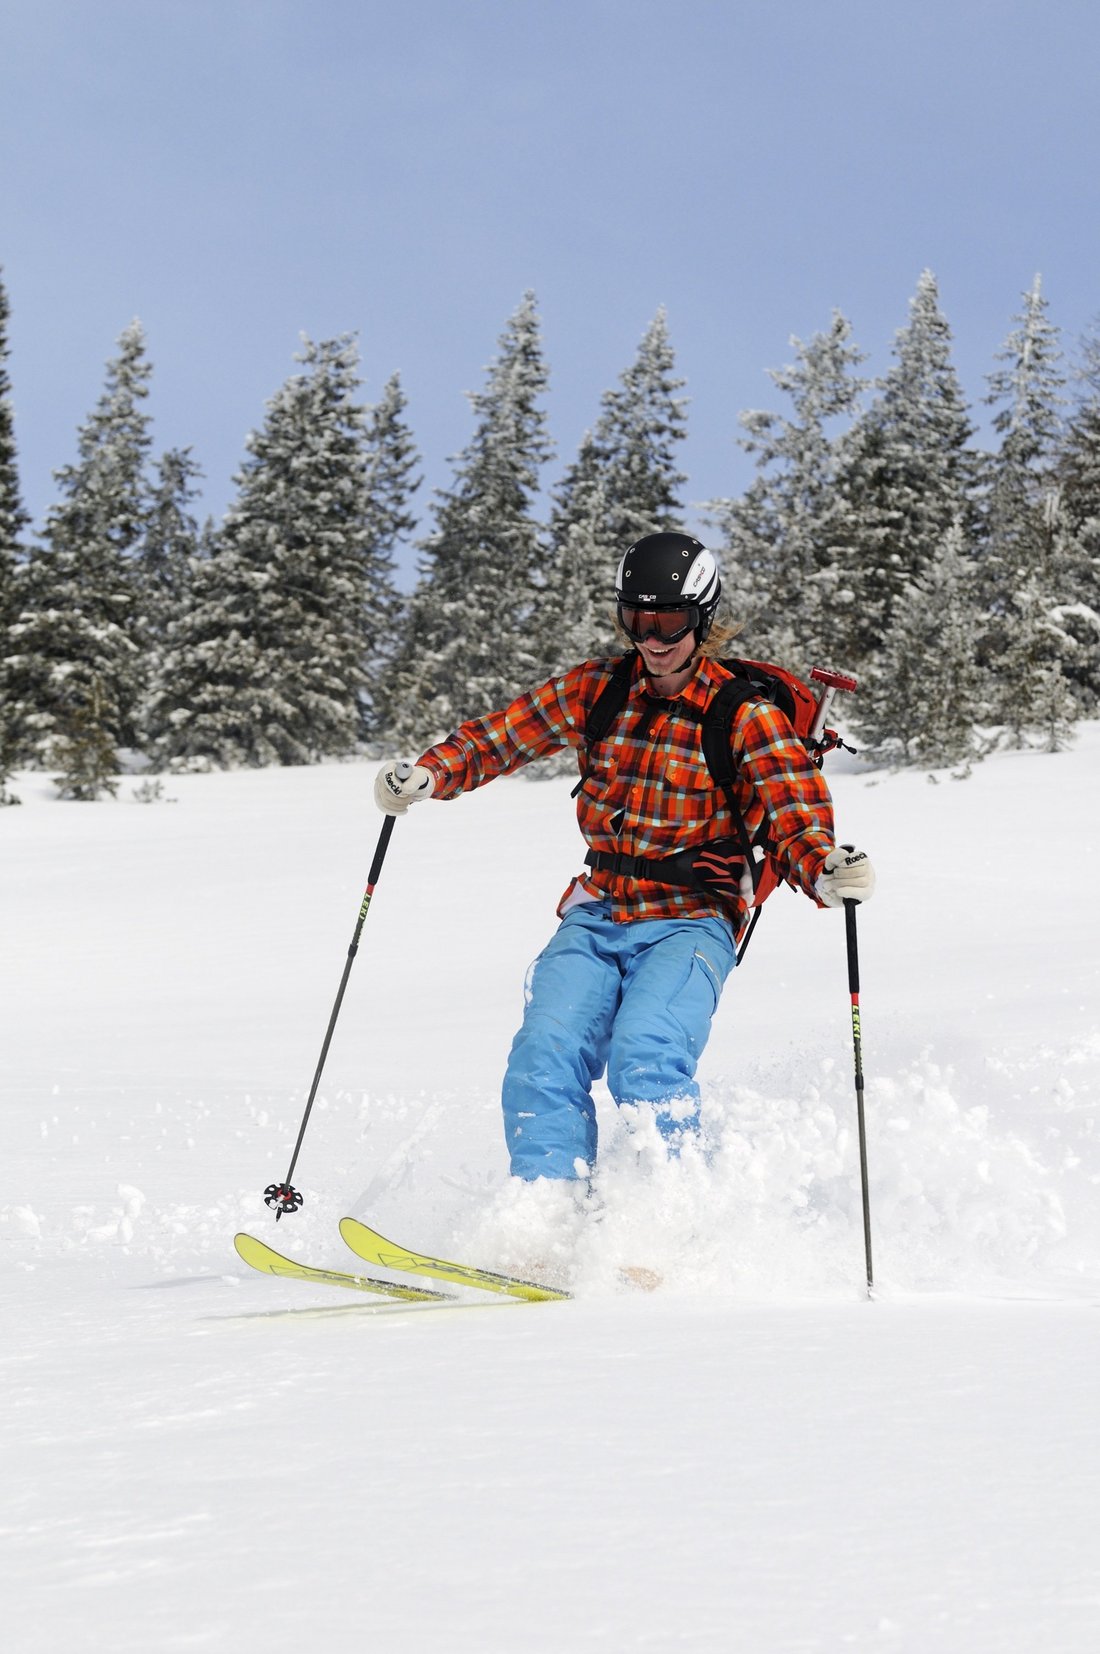 Skiing in pristine snow